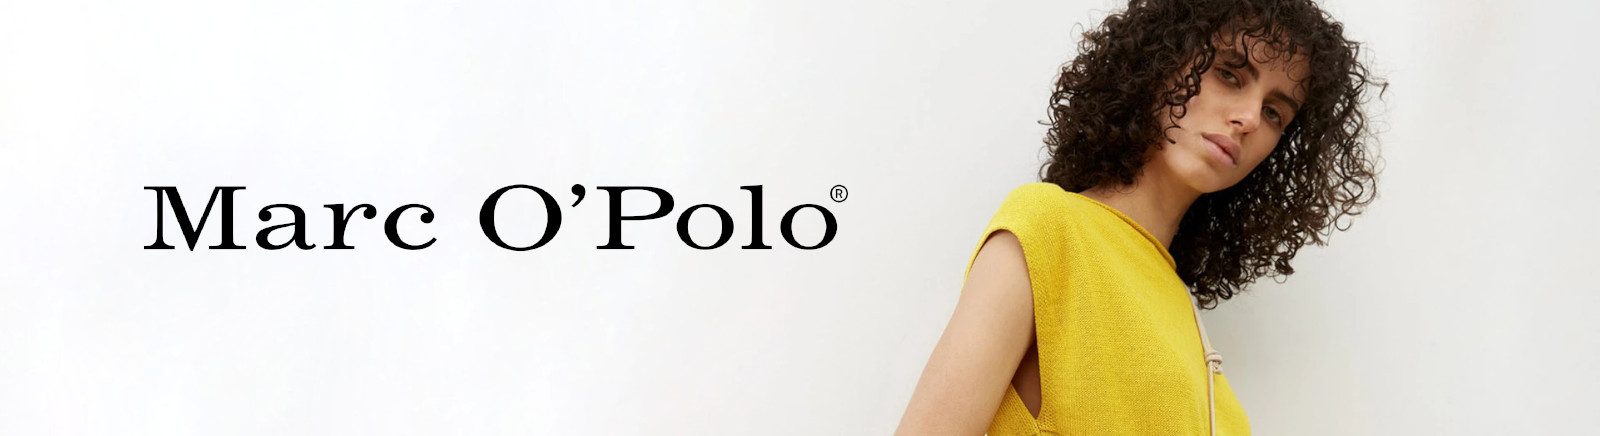 Marc'O Polo Herrenschuhe online entdecken im Juppen Schuhe Shop